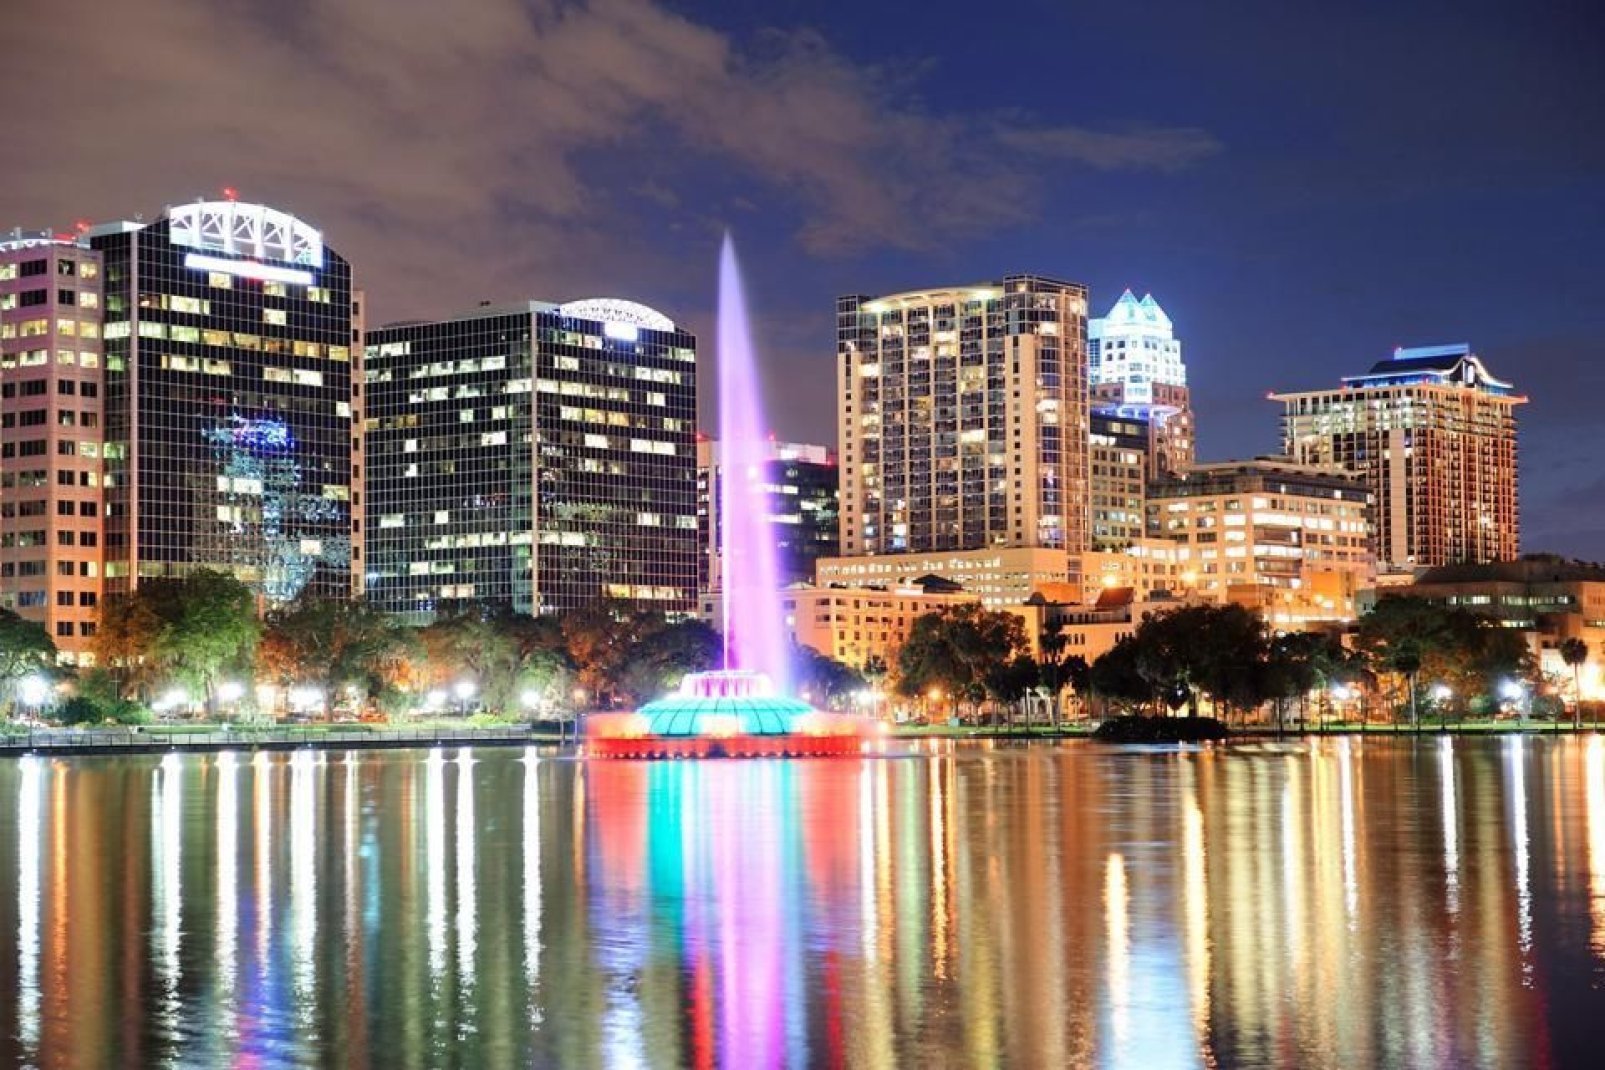 Der Springbrunnen des Eola-Sees im Stadtzentrum von Orlando bietet vor allem Nachts einen wunderschönen Anblick.